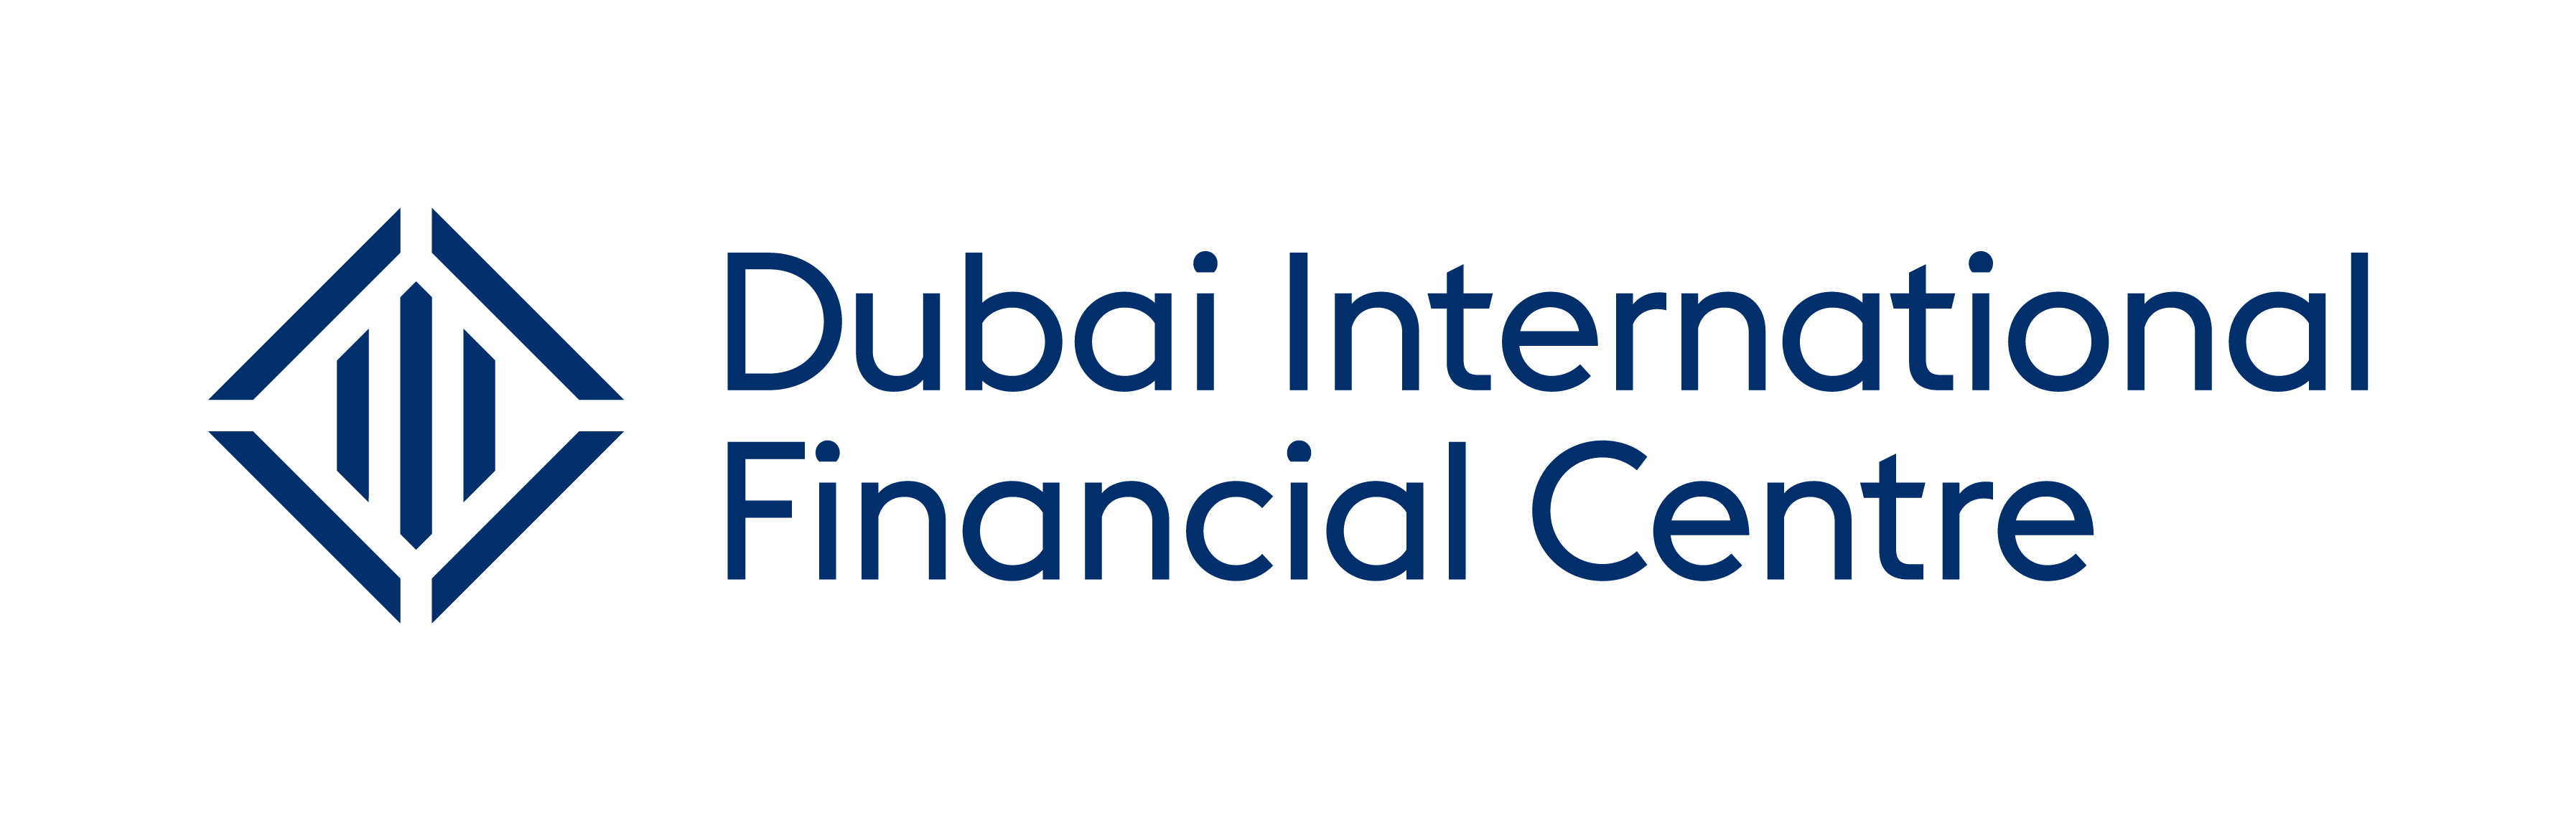 Dubai_International_Financial_Centre_logo